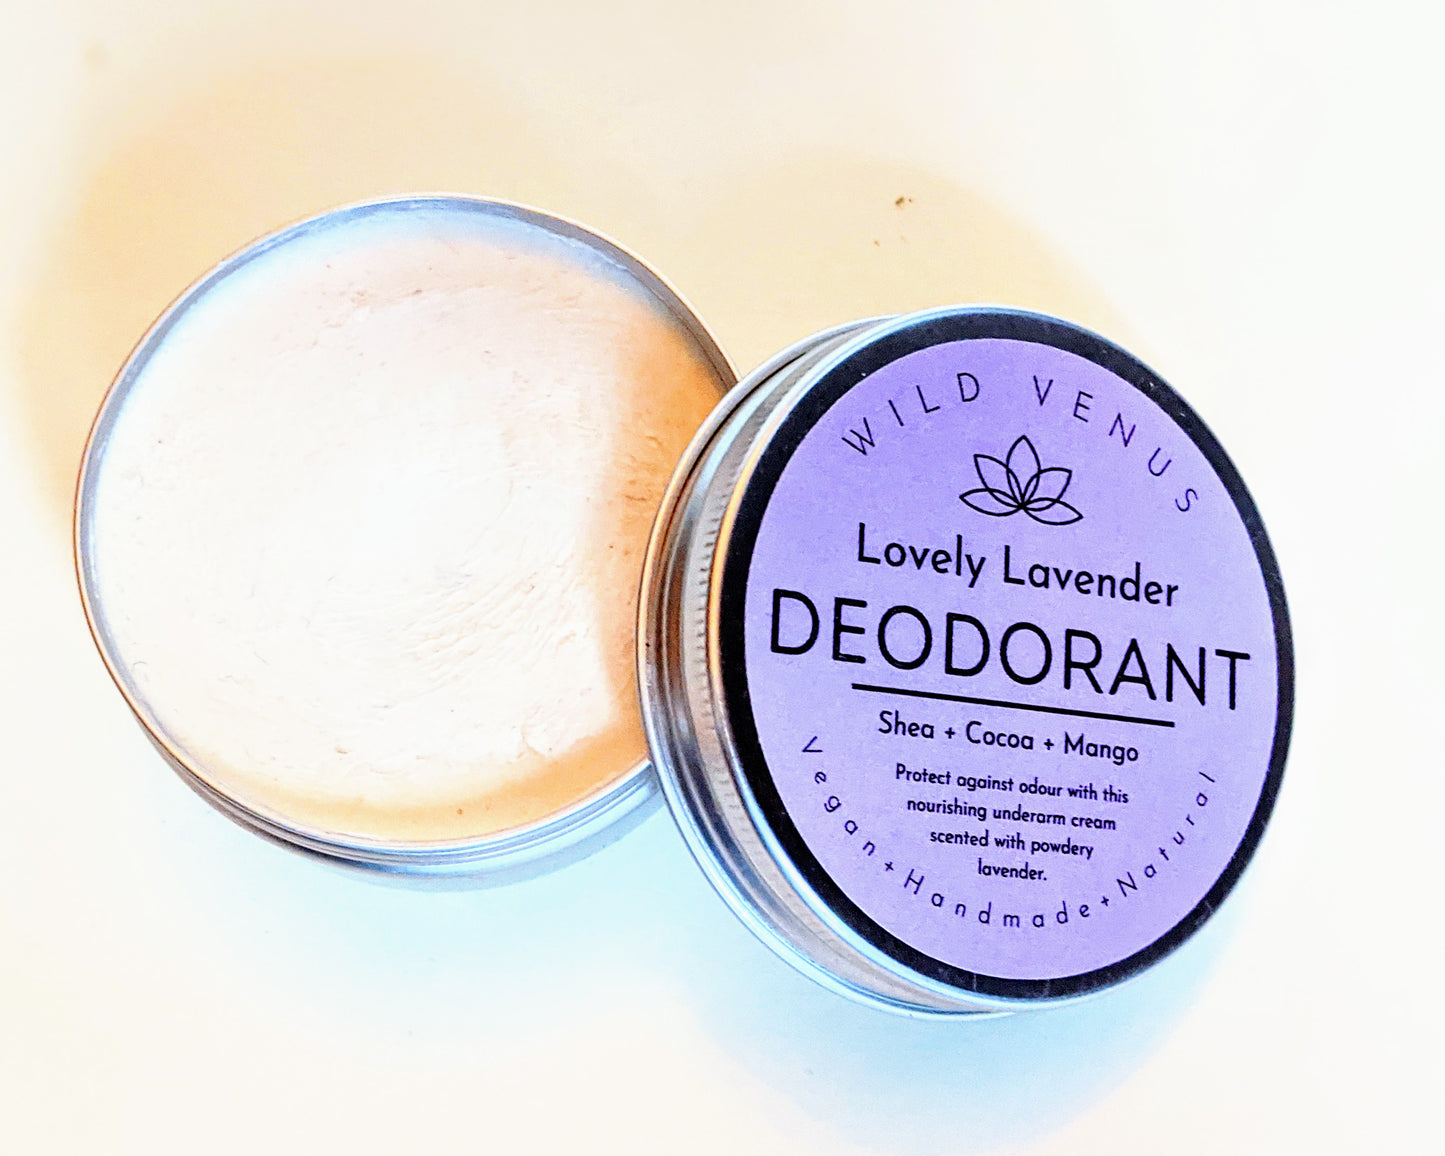 Lovely Lavender Deodorant open tin. 